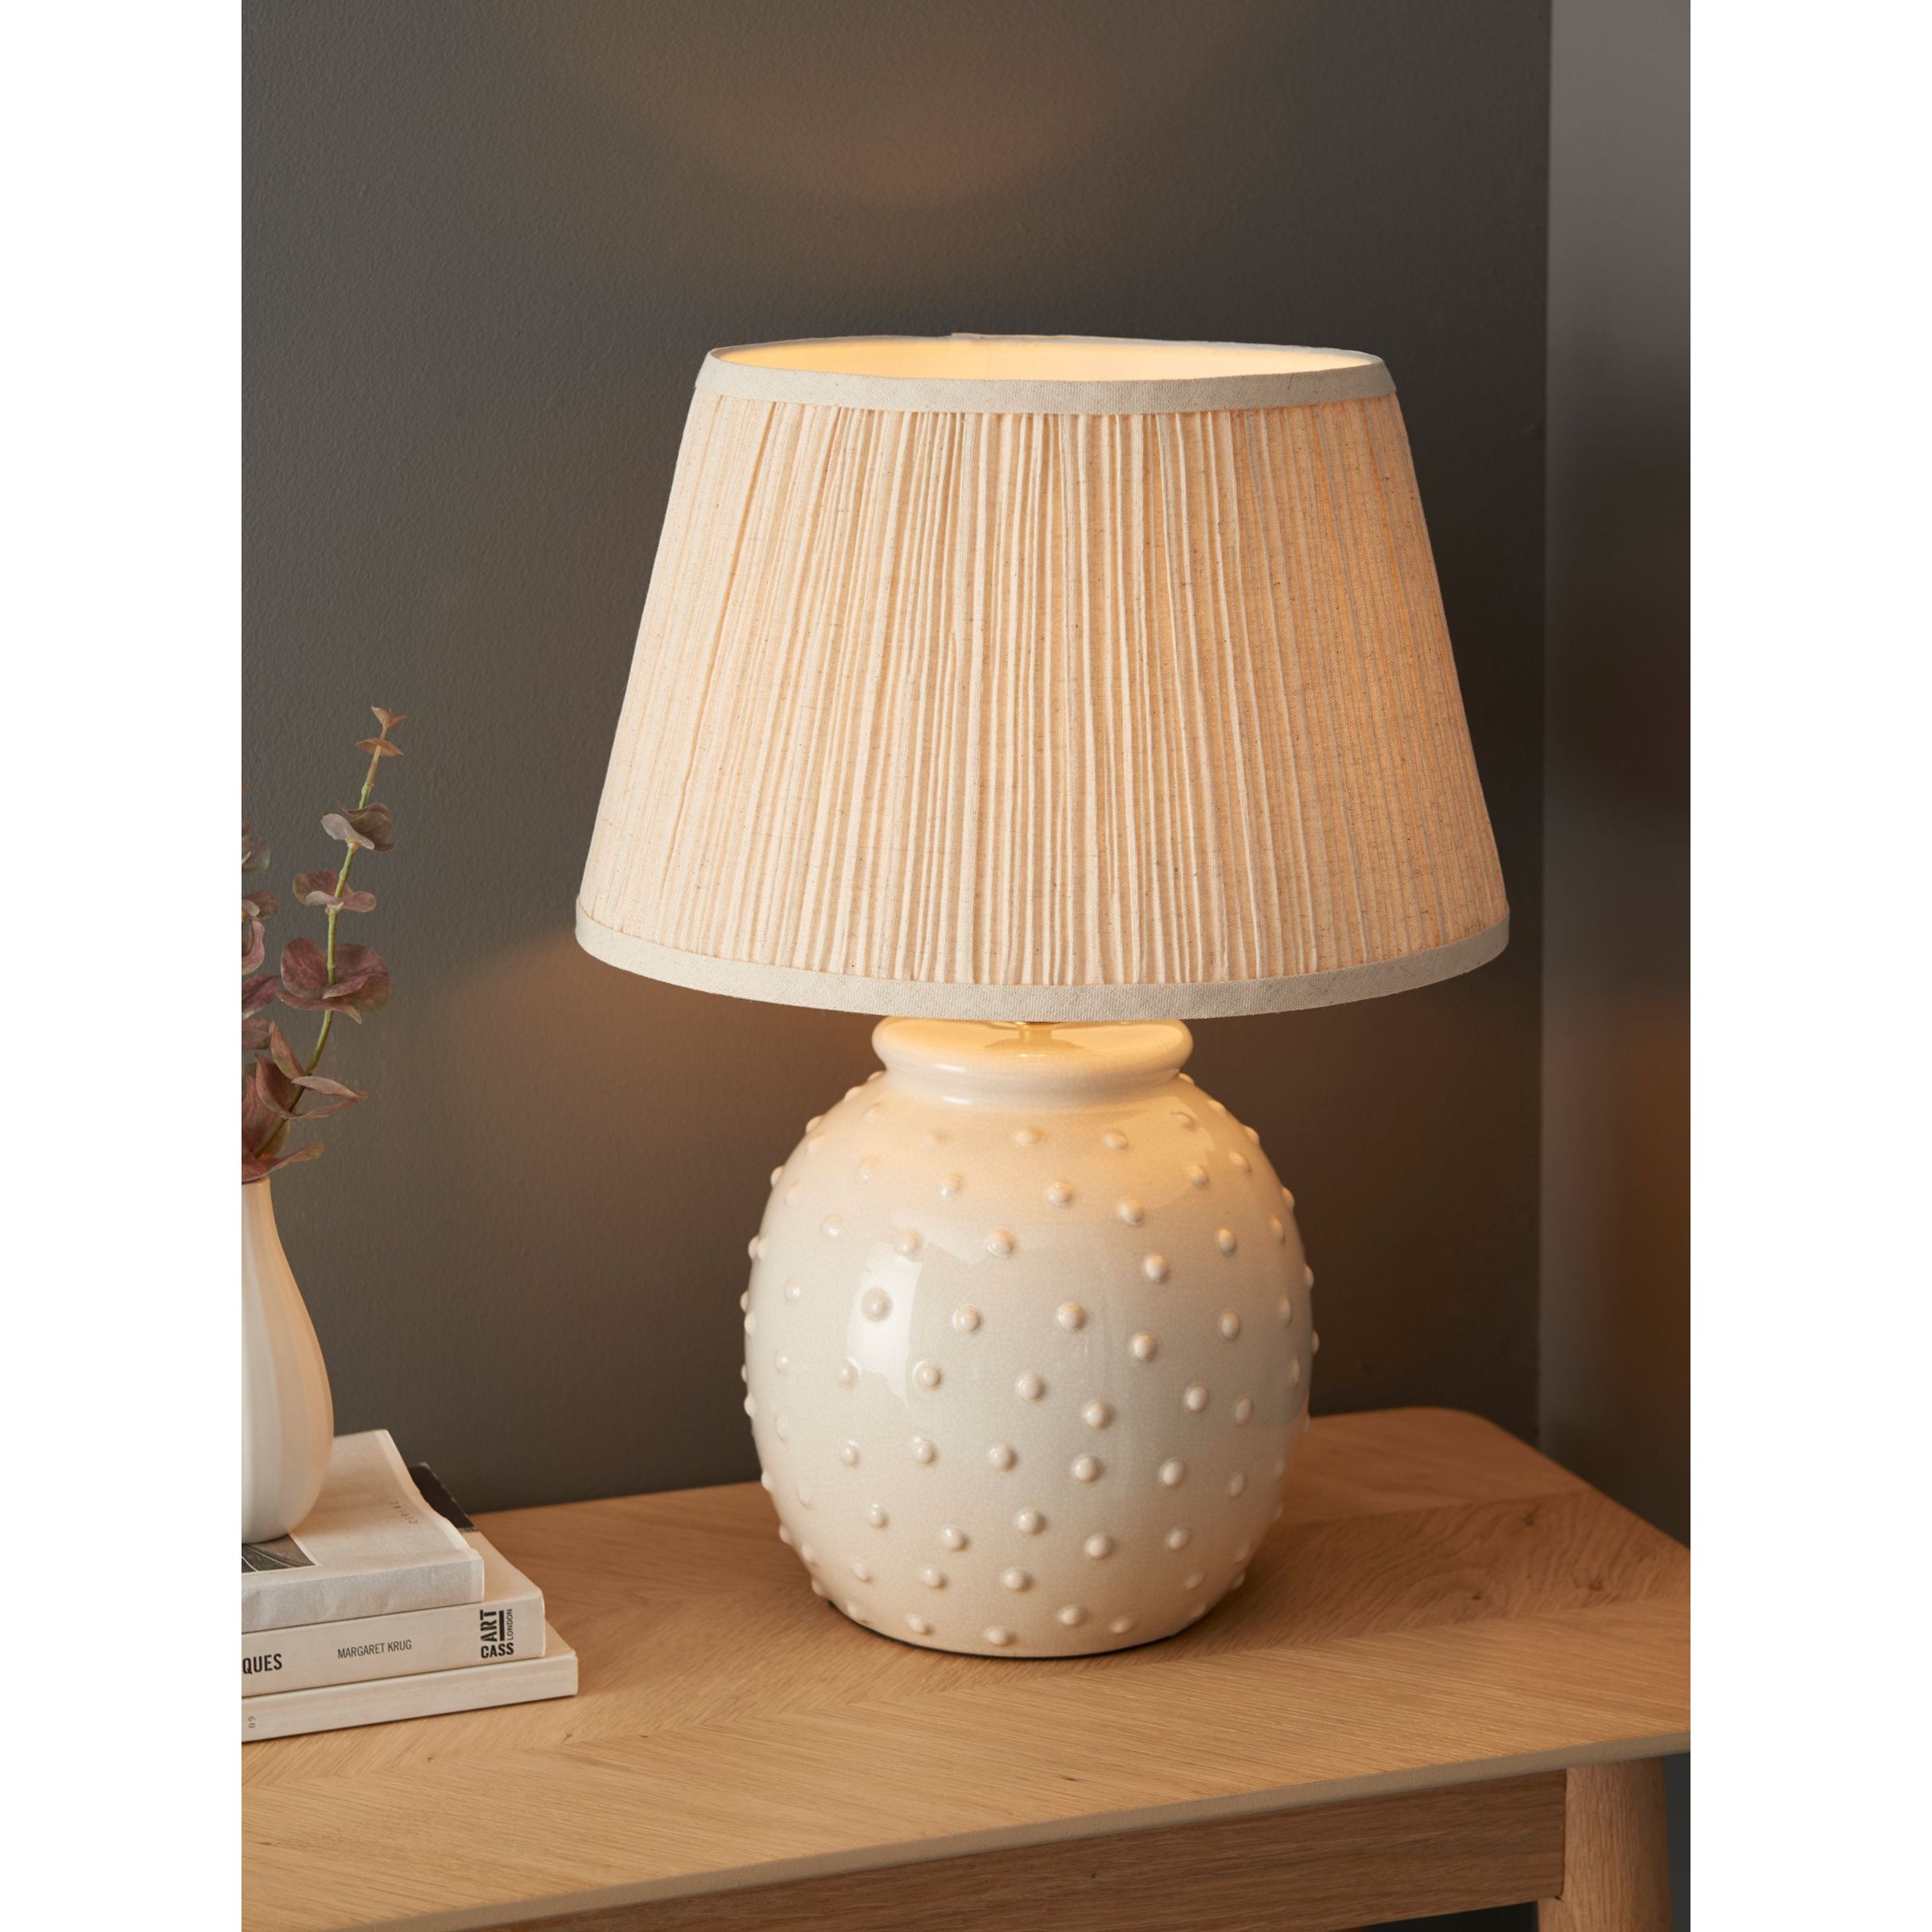 John Lewis Seafoam Ceramic Table Lamp, White/Natural - image 1